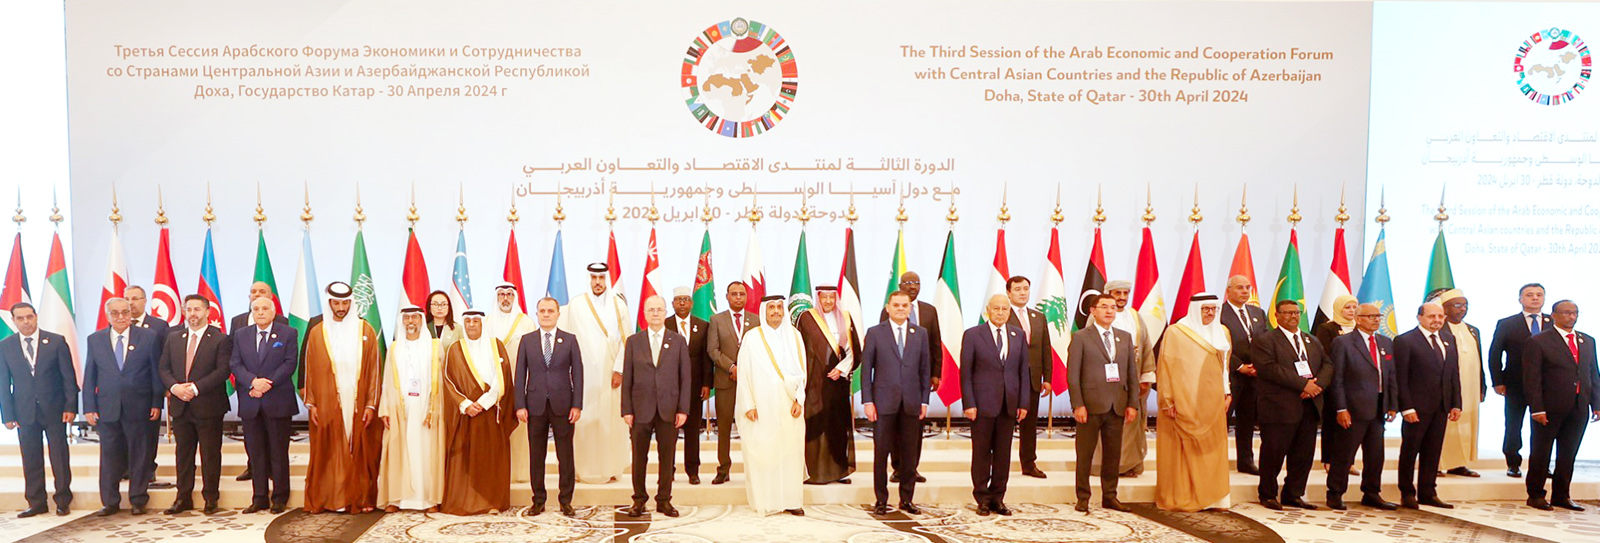 الدورة الثالثة لمنتدى الاقتصاد والتعاون العربي مع دول آسيا الوسطى وأذربيجان في الدوحة